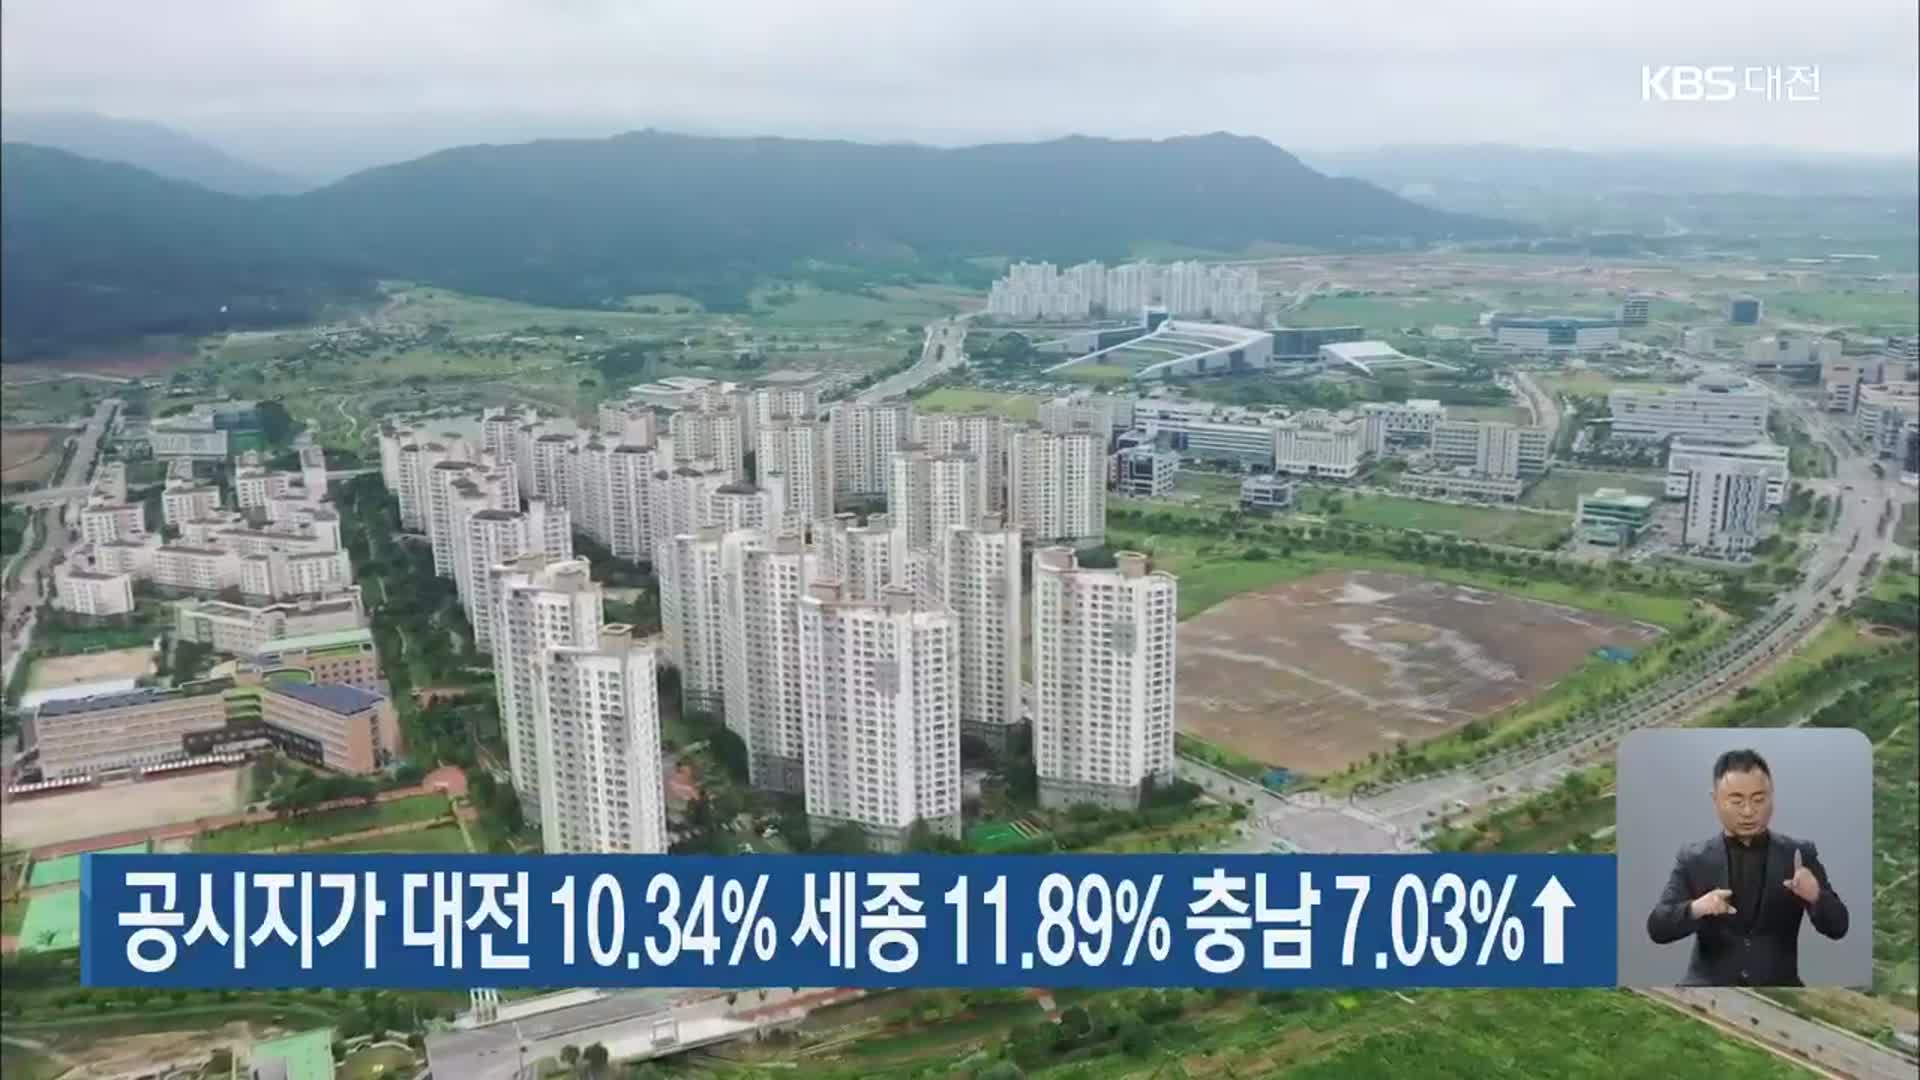 공시지가 대전 10.34% 세종 11.89% 충남 7.03% ↑